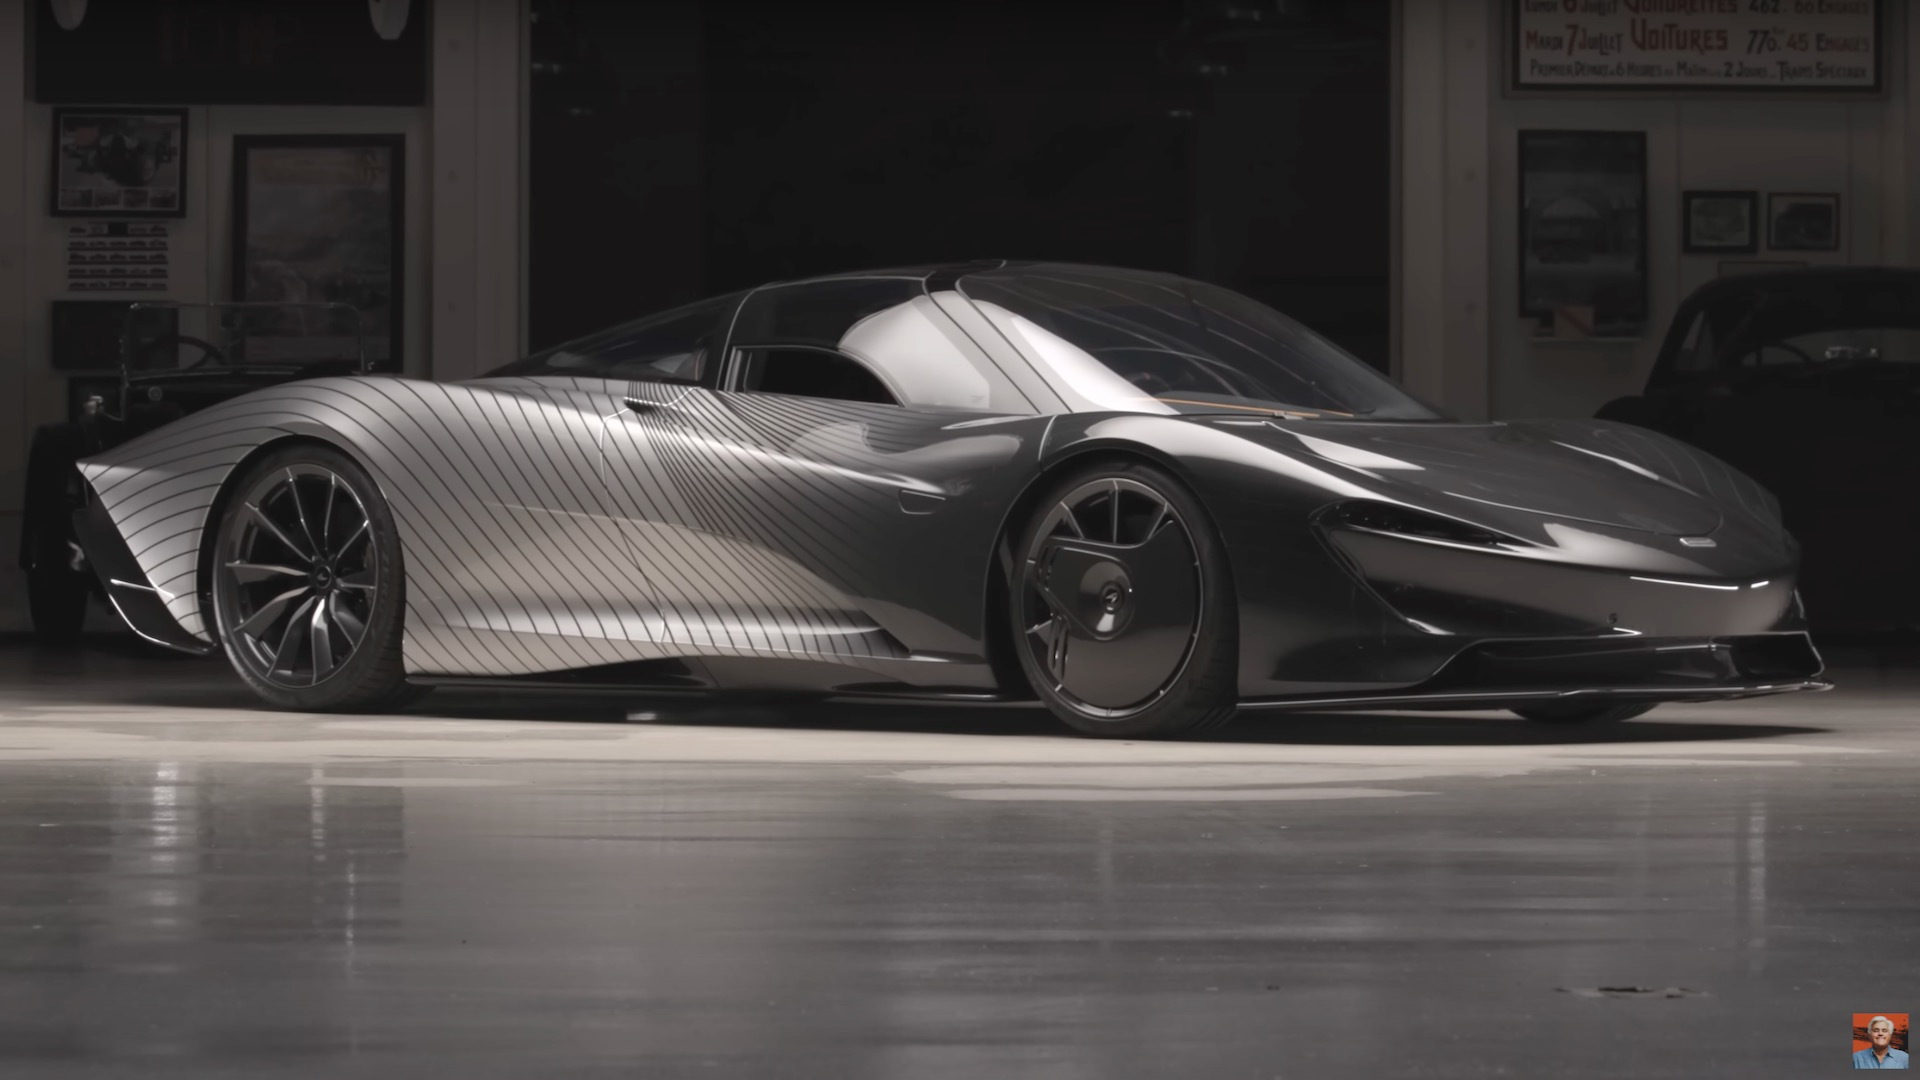 McLaren Speedtail "Albert" on Jay Leno's Garage